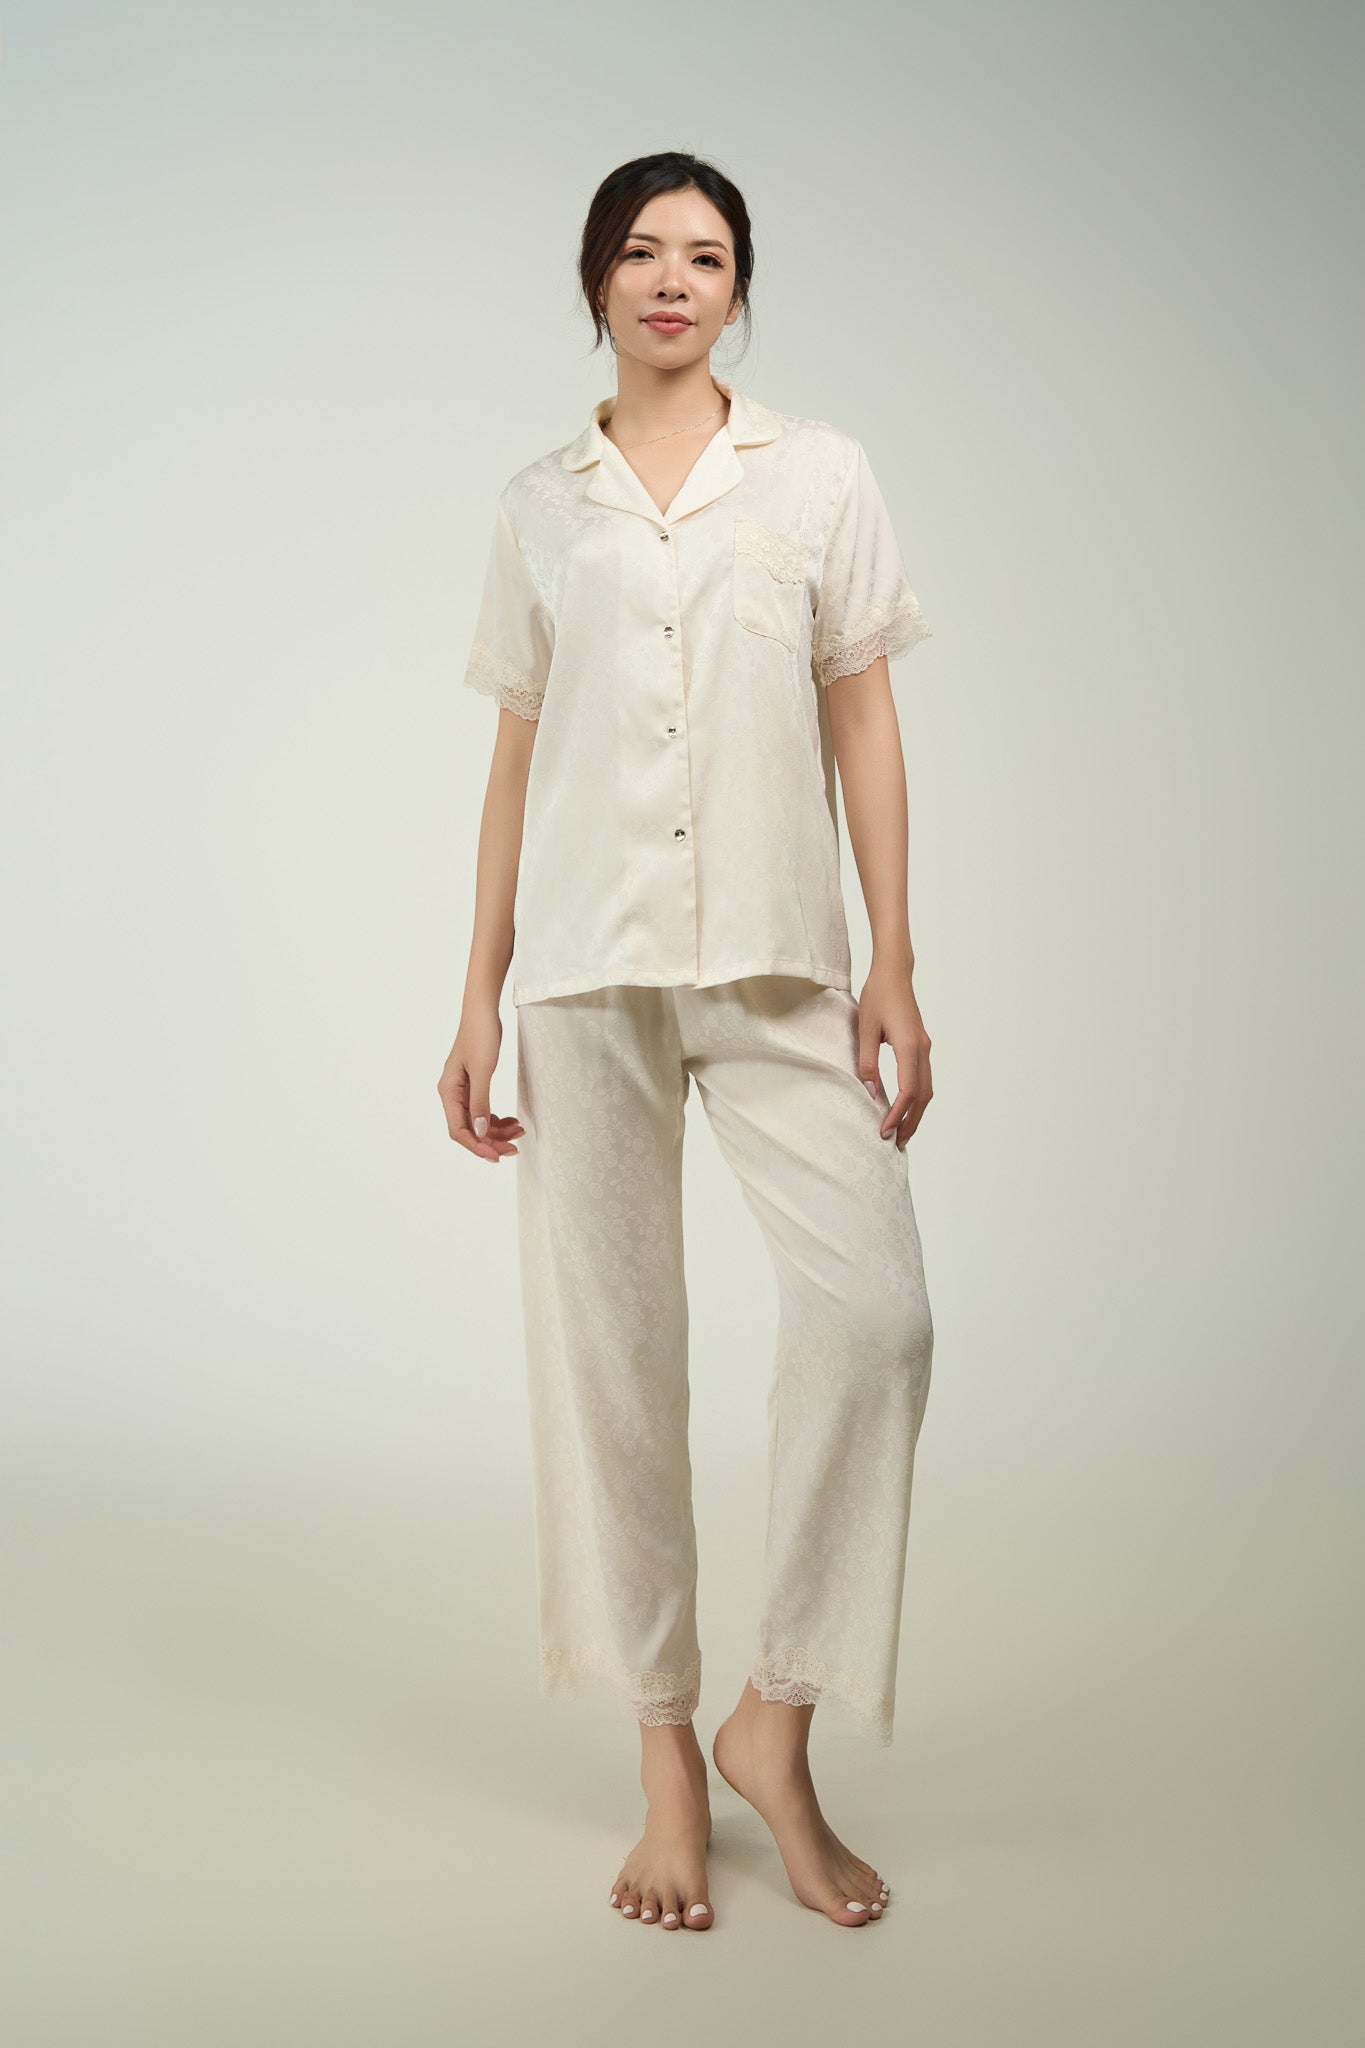 White Lace Short Sleeve Pyjama Set – Lavoni Sleepwear